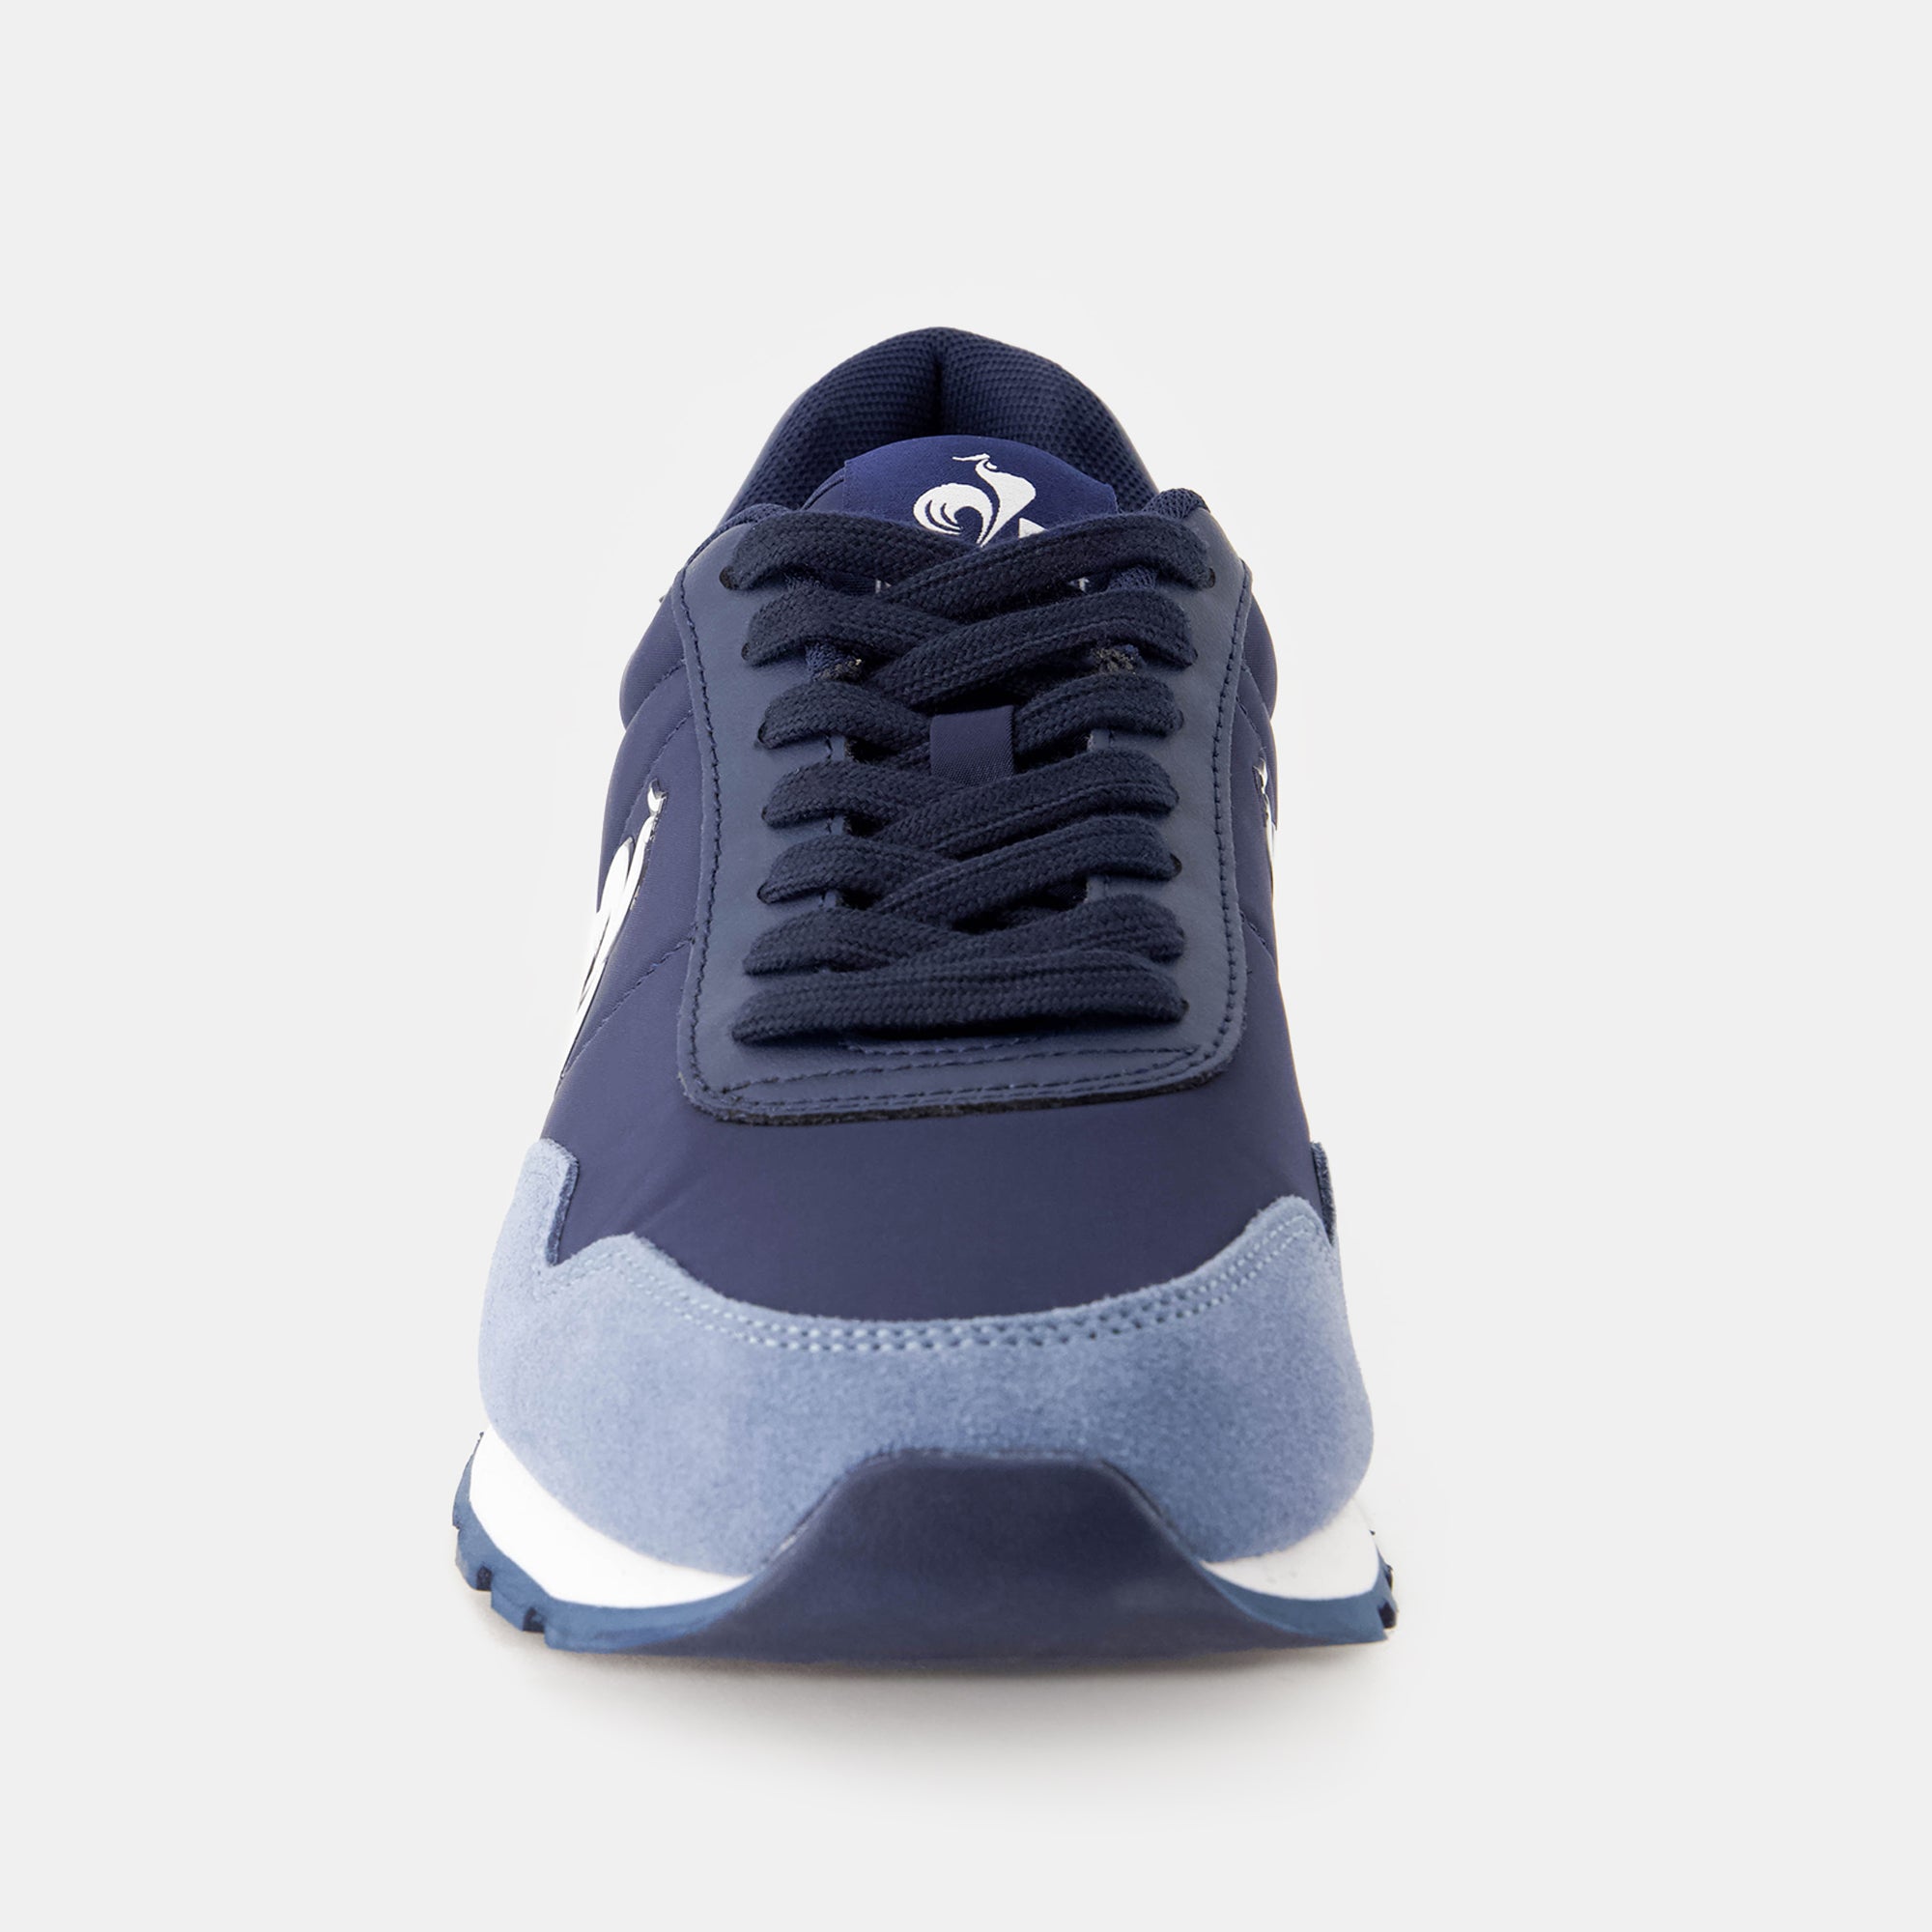 2410503-ASTRA_2 dress blue/ ashley blue  | Shoes ASTRA 2 Unisex